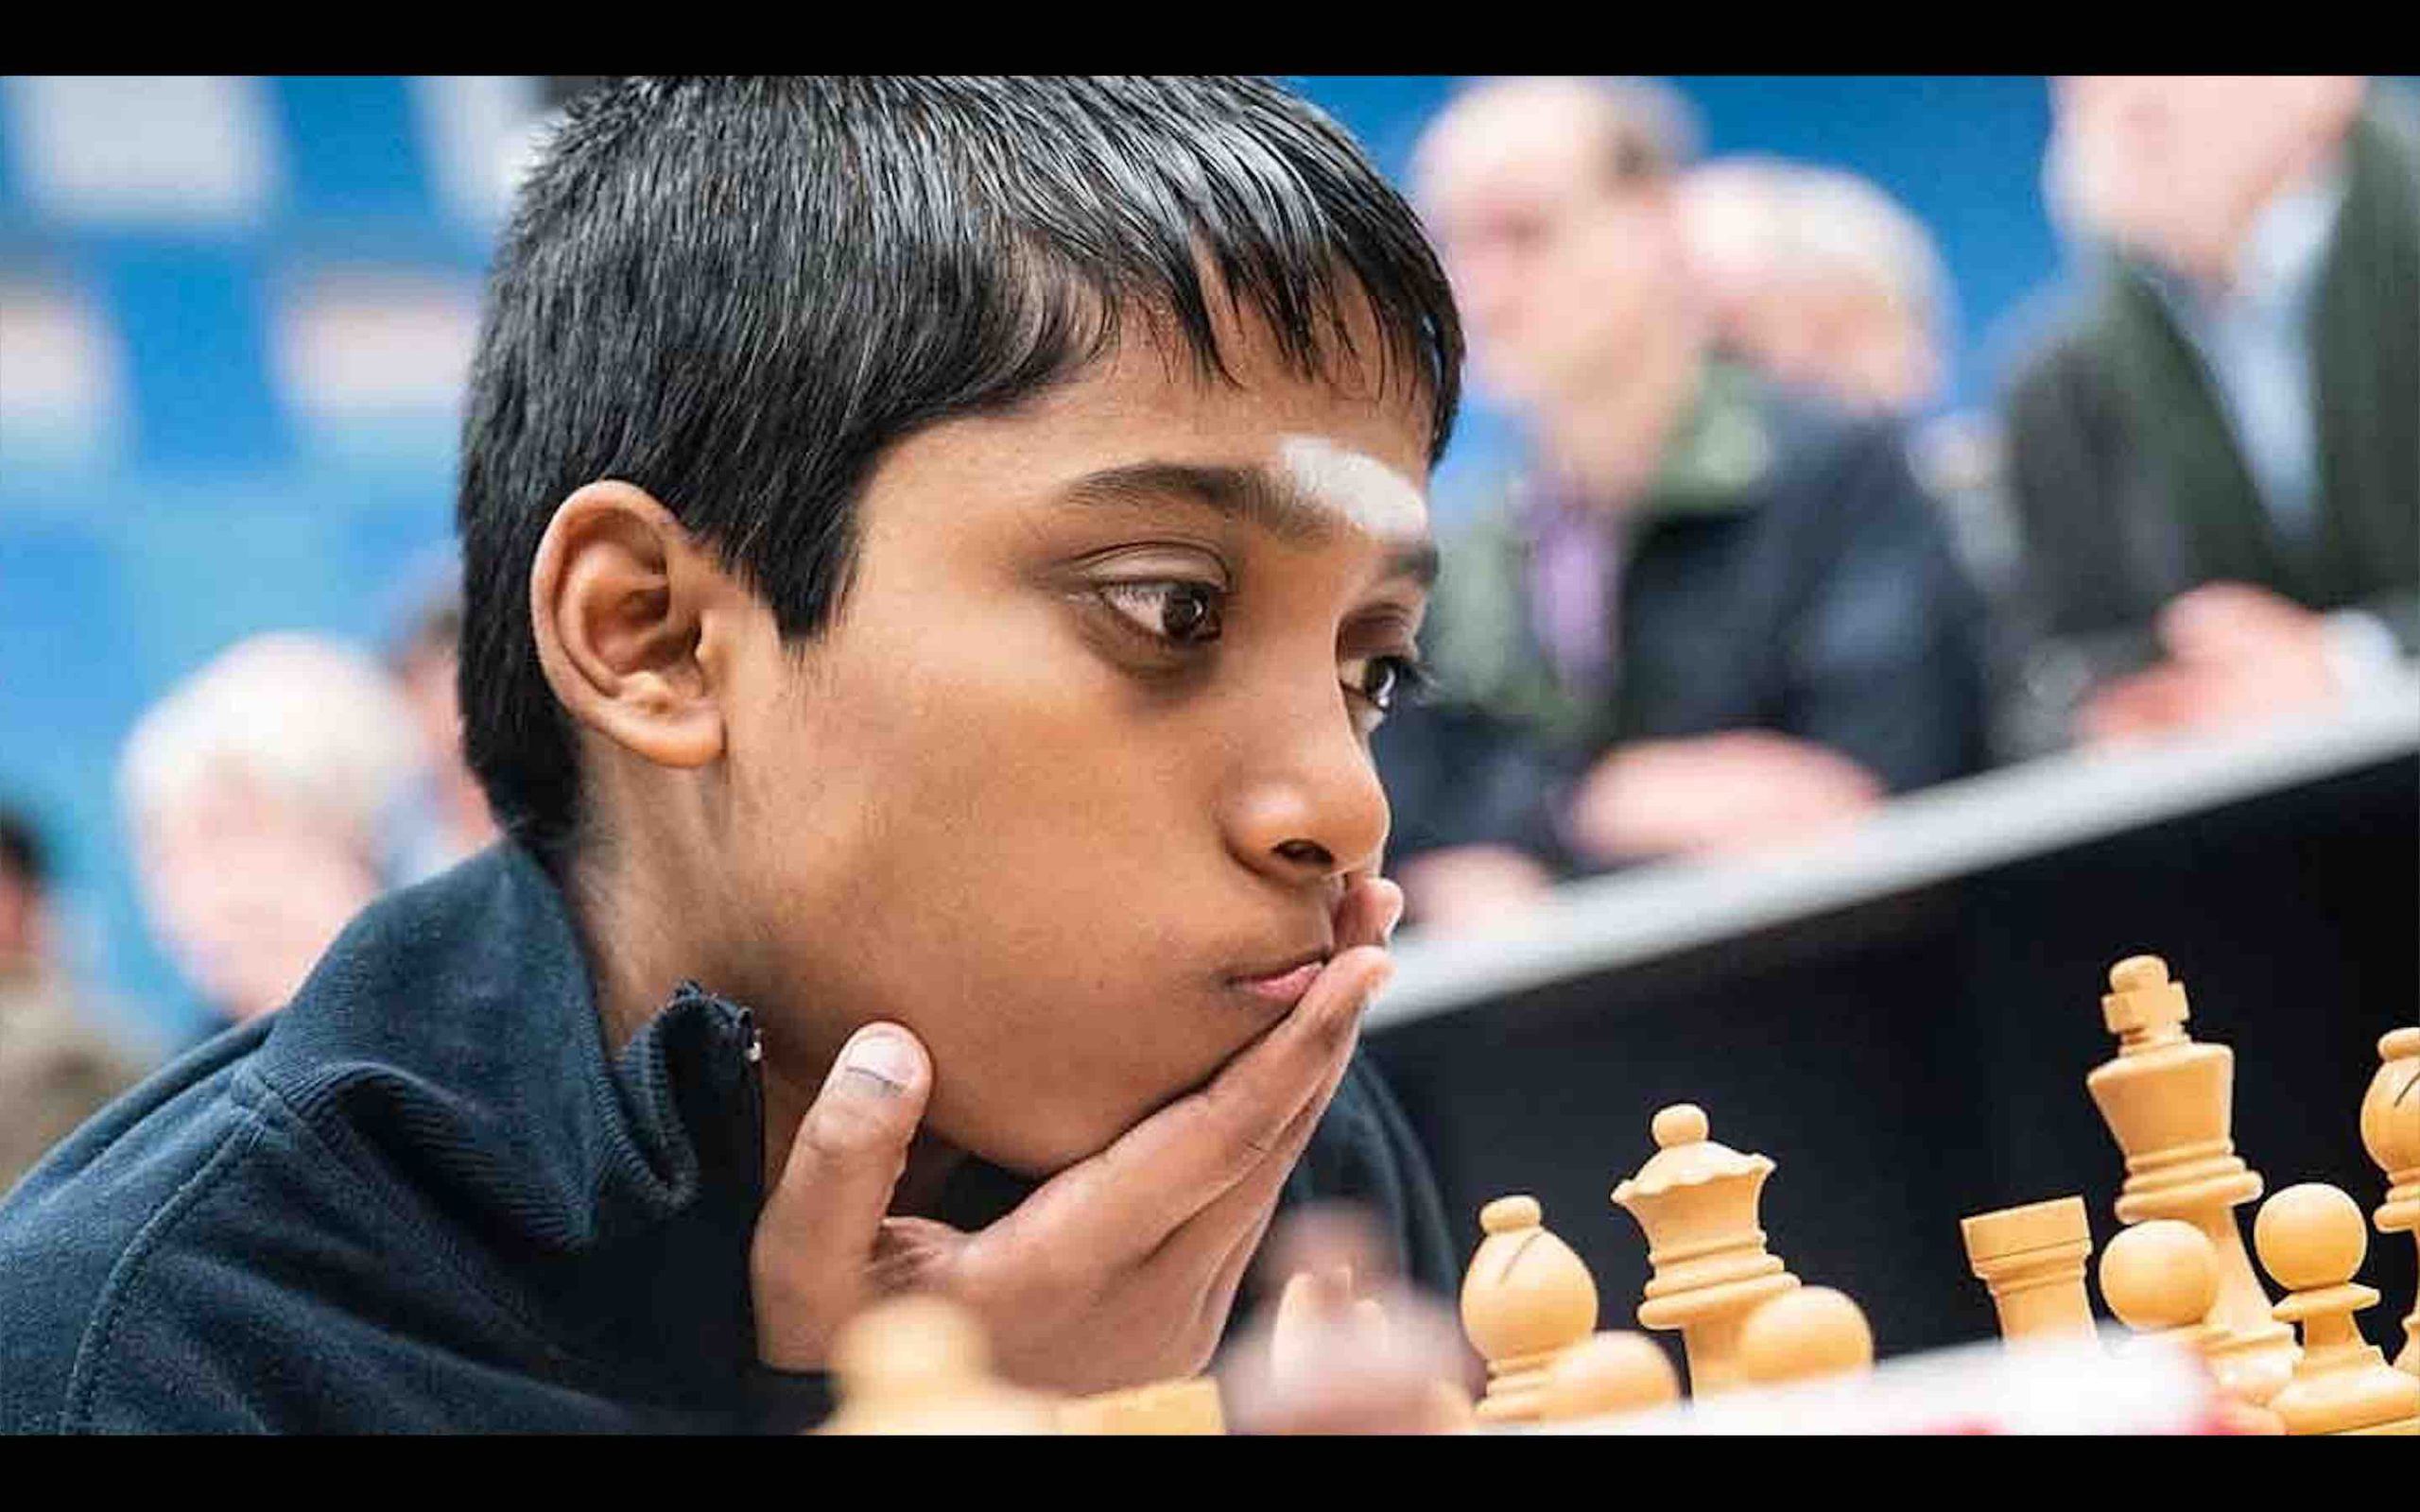 Praggnanandhaa conquista o título e jogará no Champions Chess Tour